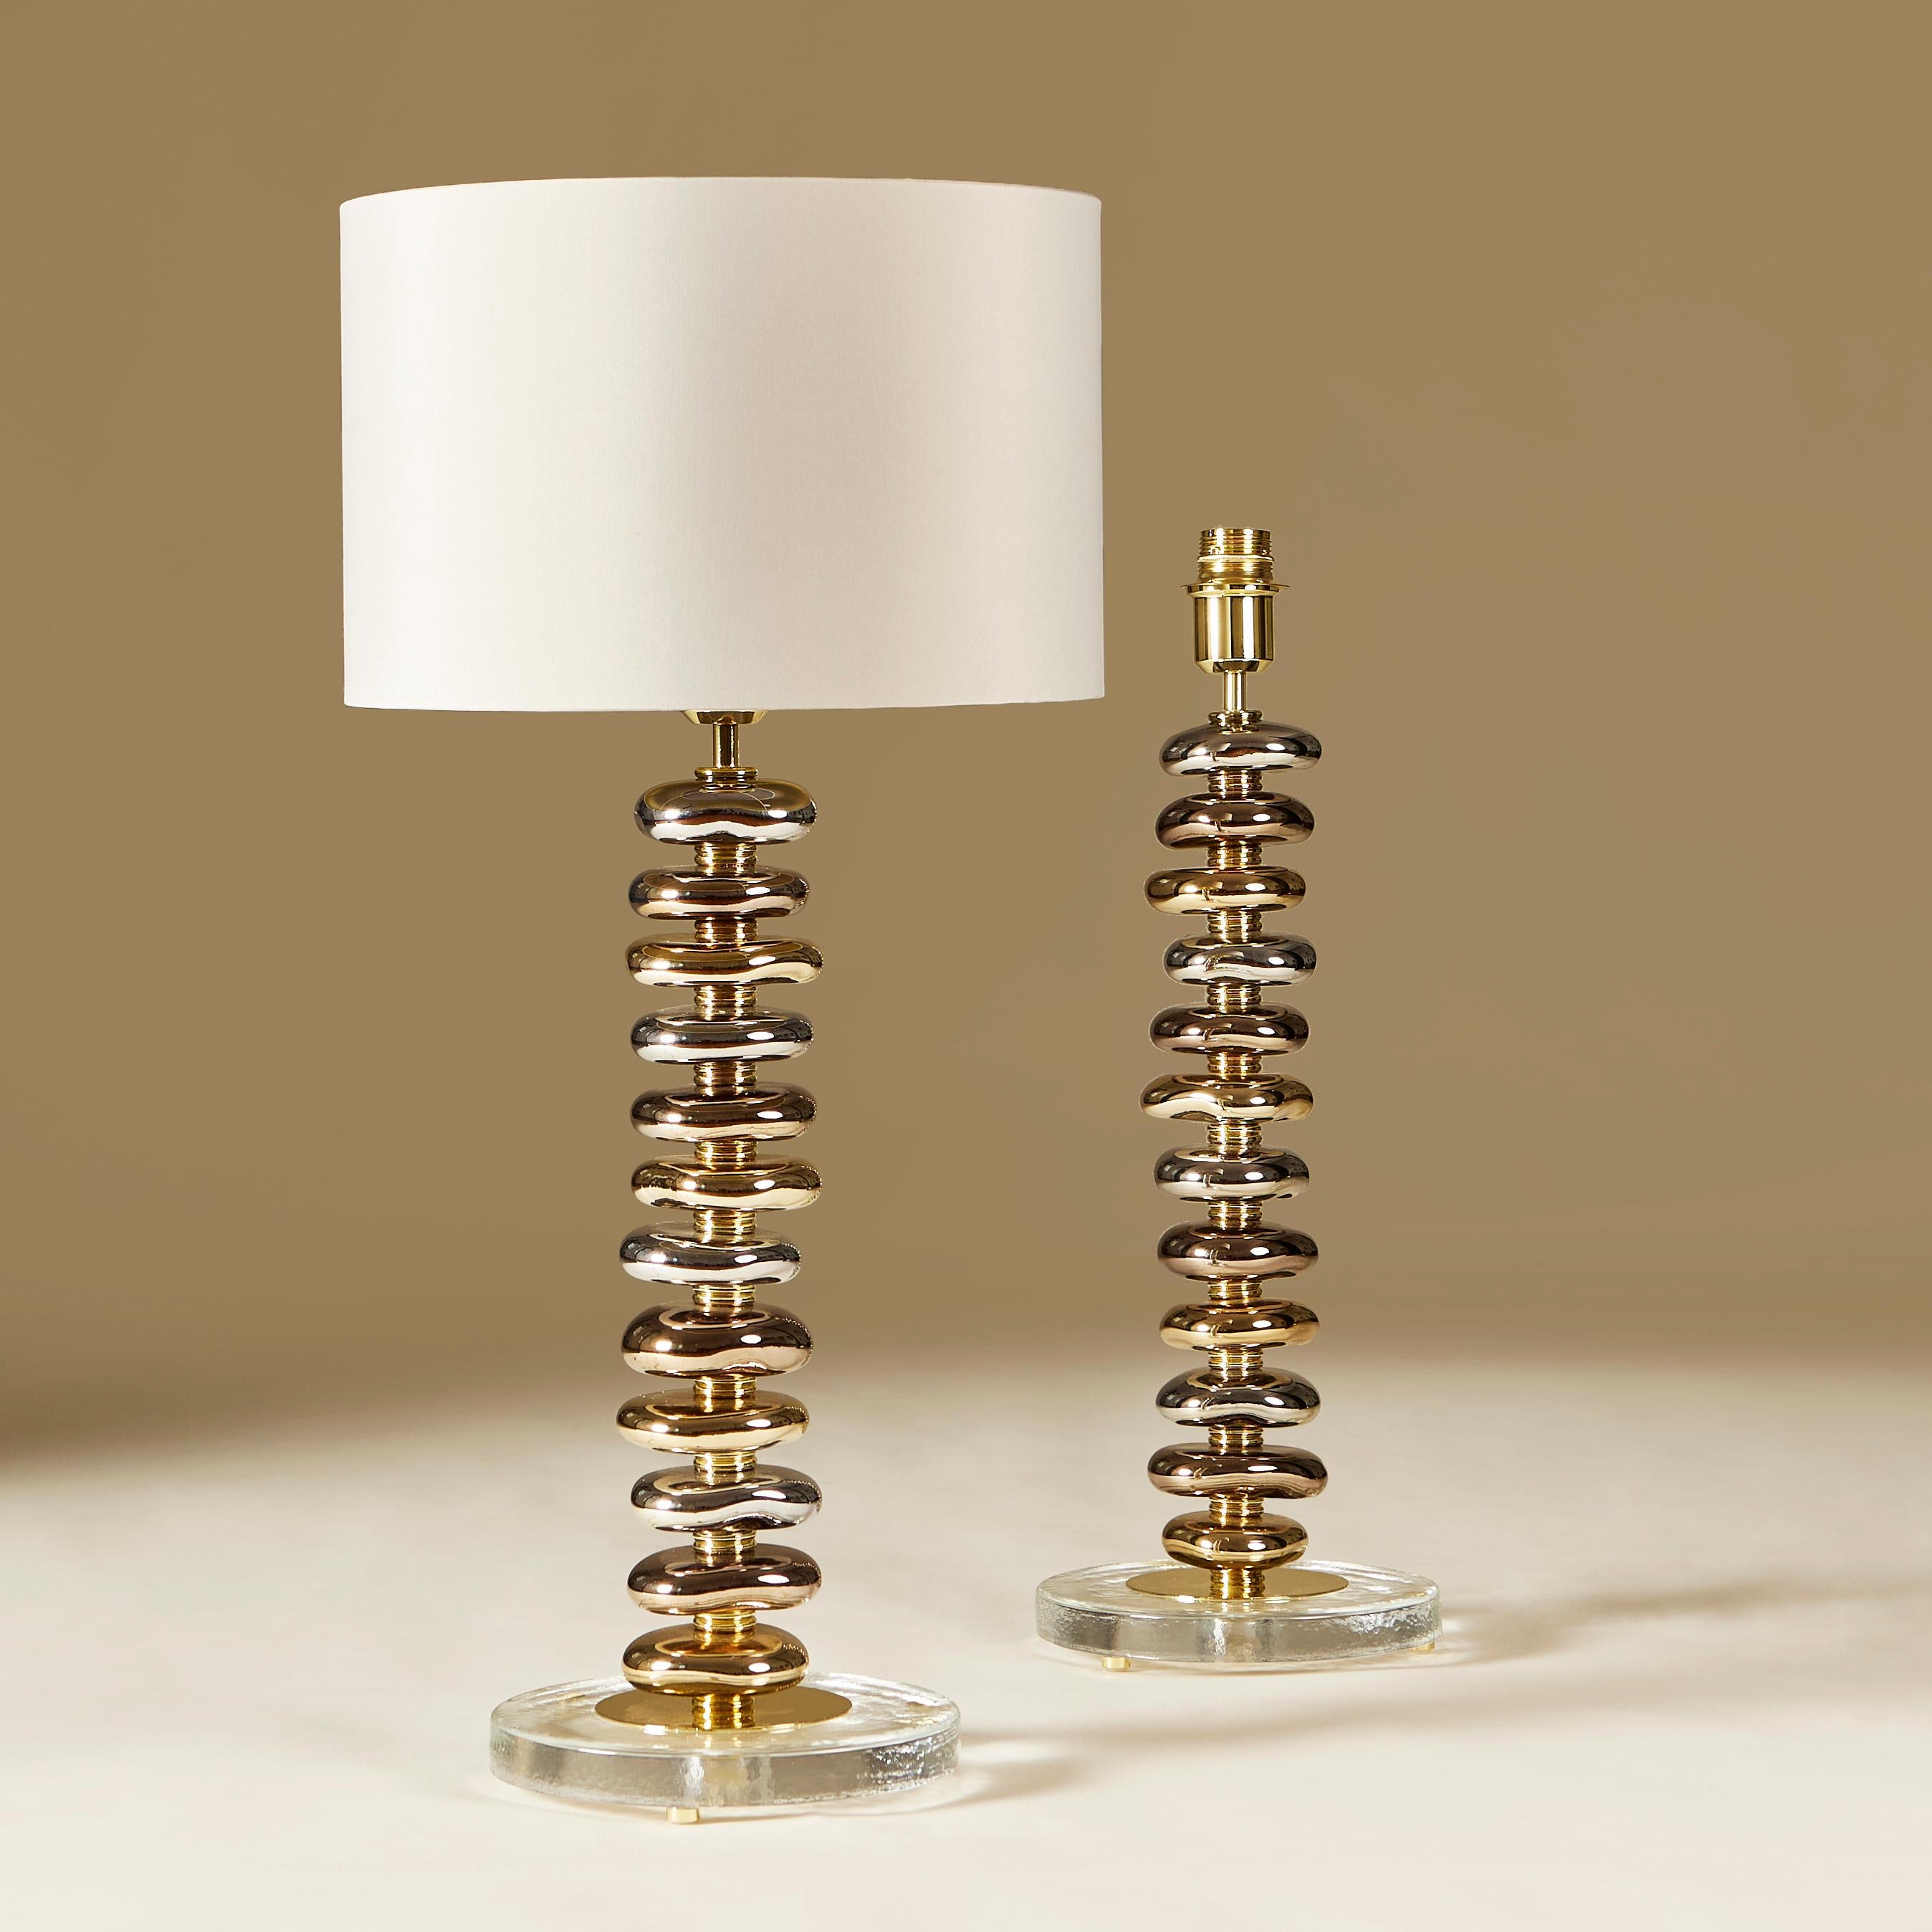 Zwei zeitgenössische Tischlampen in limitierter Auflage. Jede Lampe besteht aus 12 handgefertigten, glatt geschliffenen Murano-Kieseln in Metallic-Tönen von Gold, Silber und Bronze. Jeder Kieselstein ist mit einer stufenförmigen Schicht aus Messing